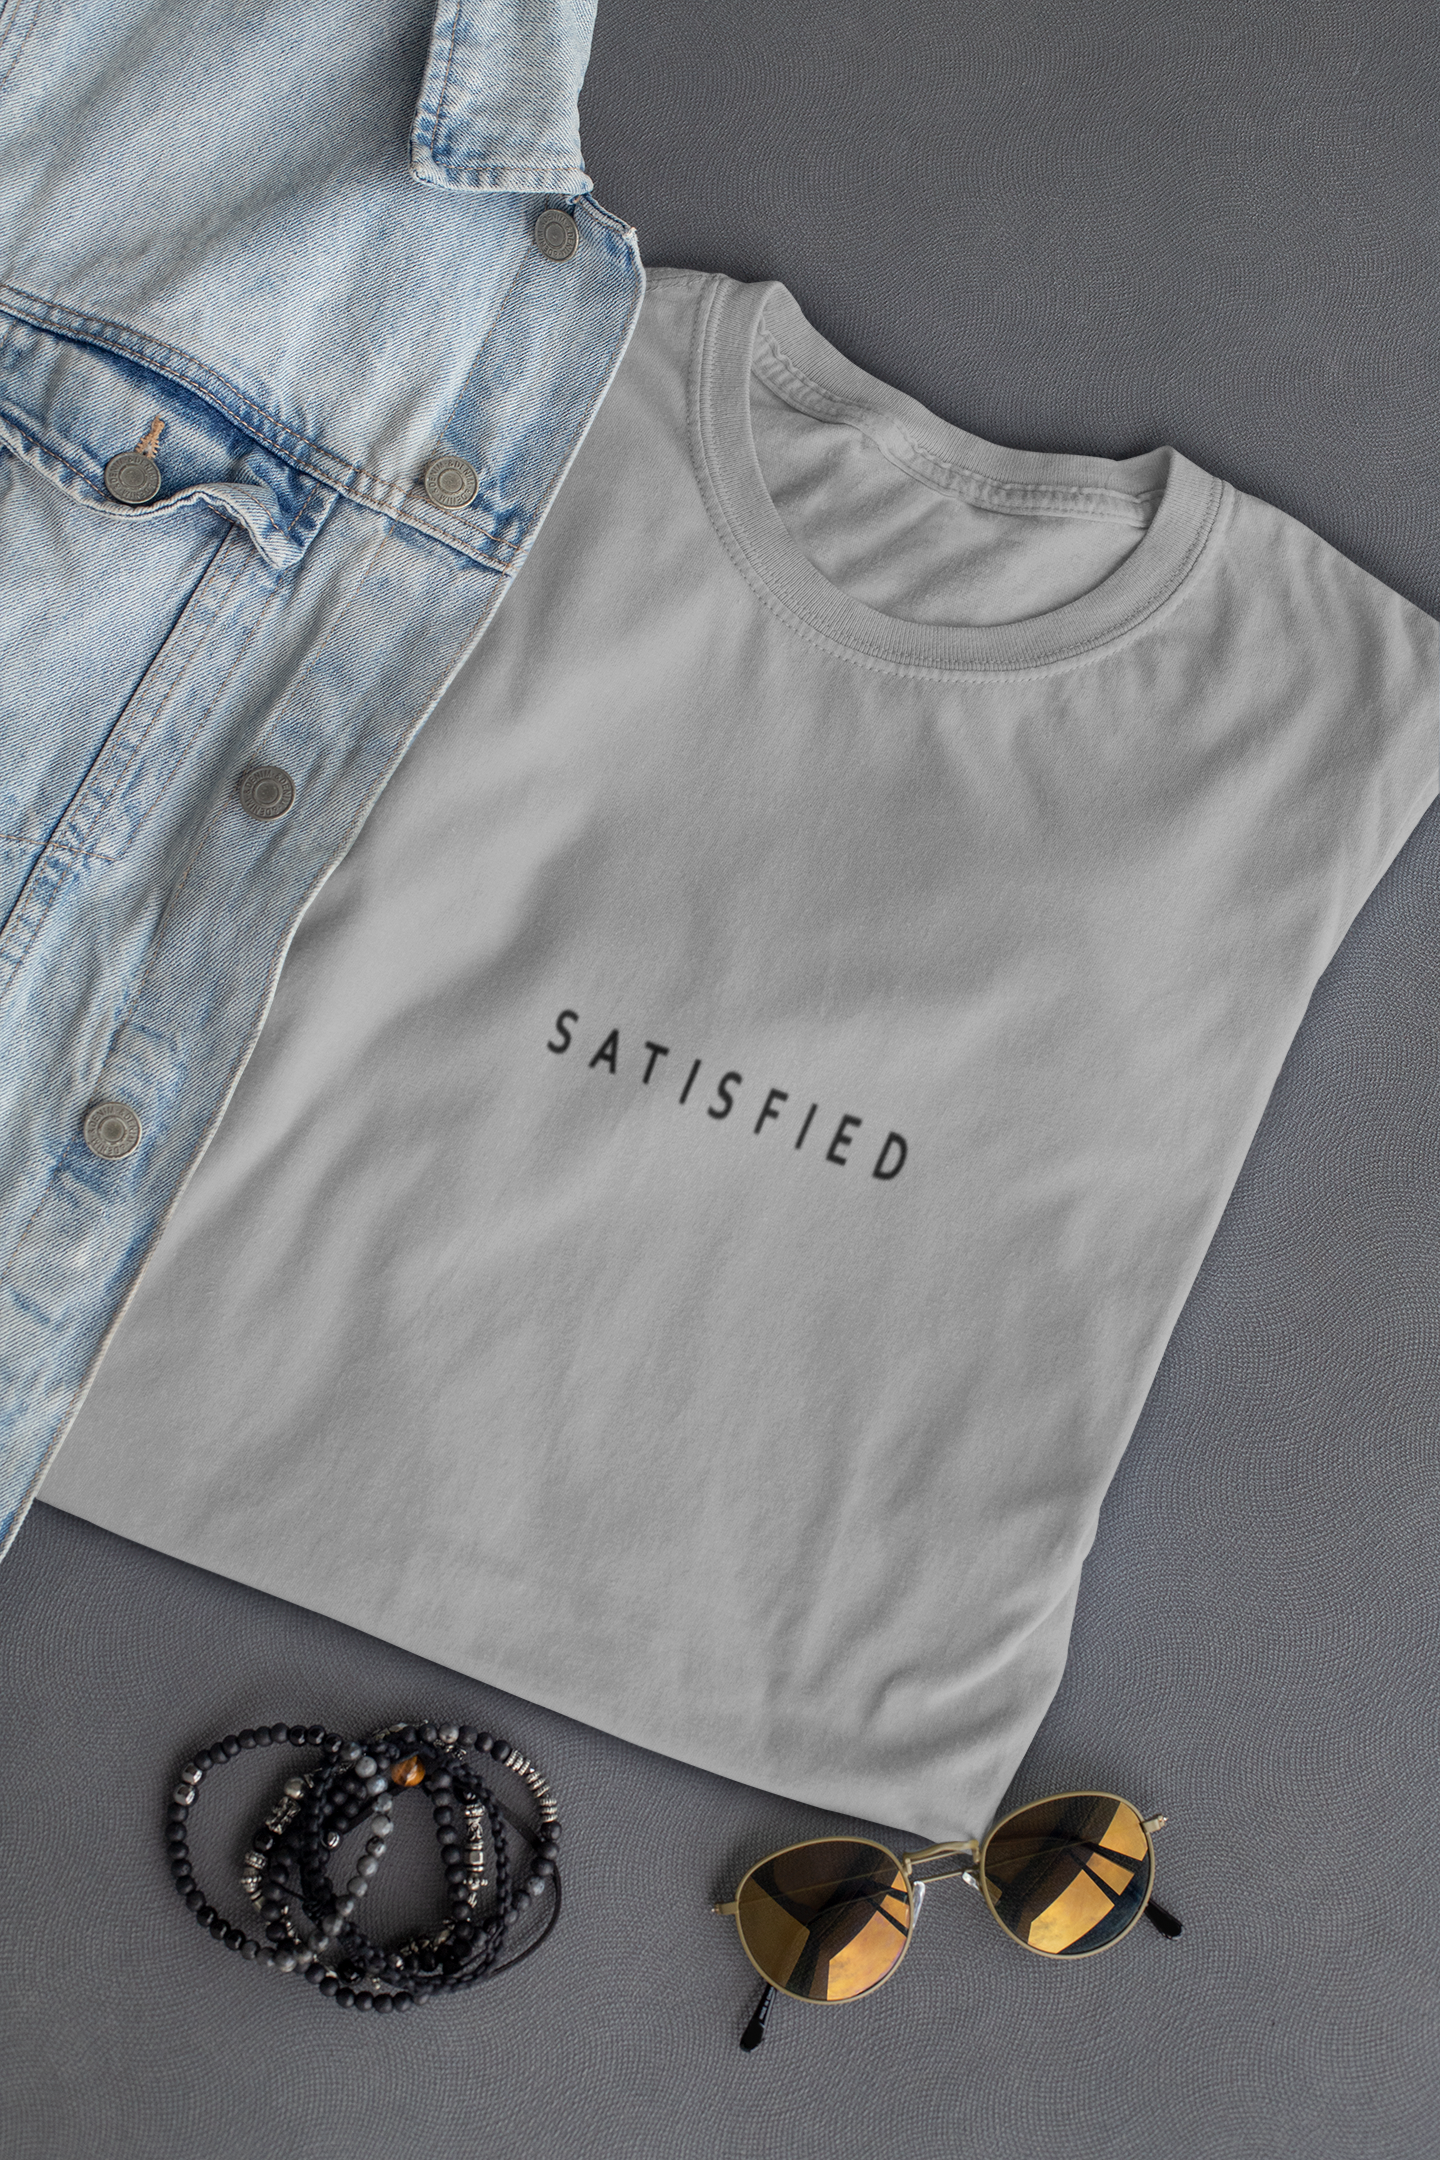 Satisfied Minimal Women Half Sleeves T-shirt- FunkyTeesClub